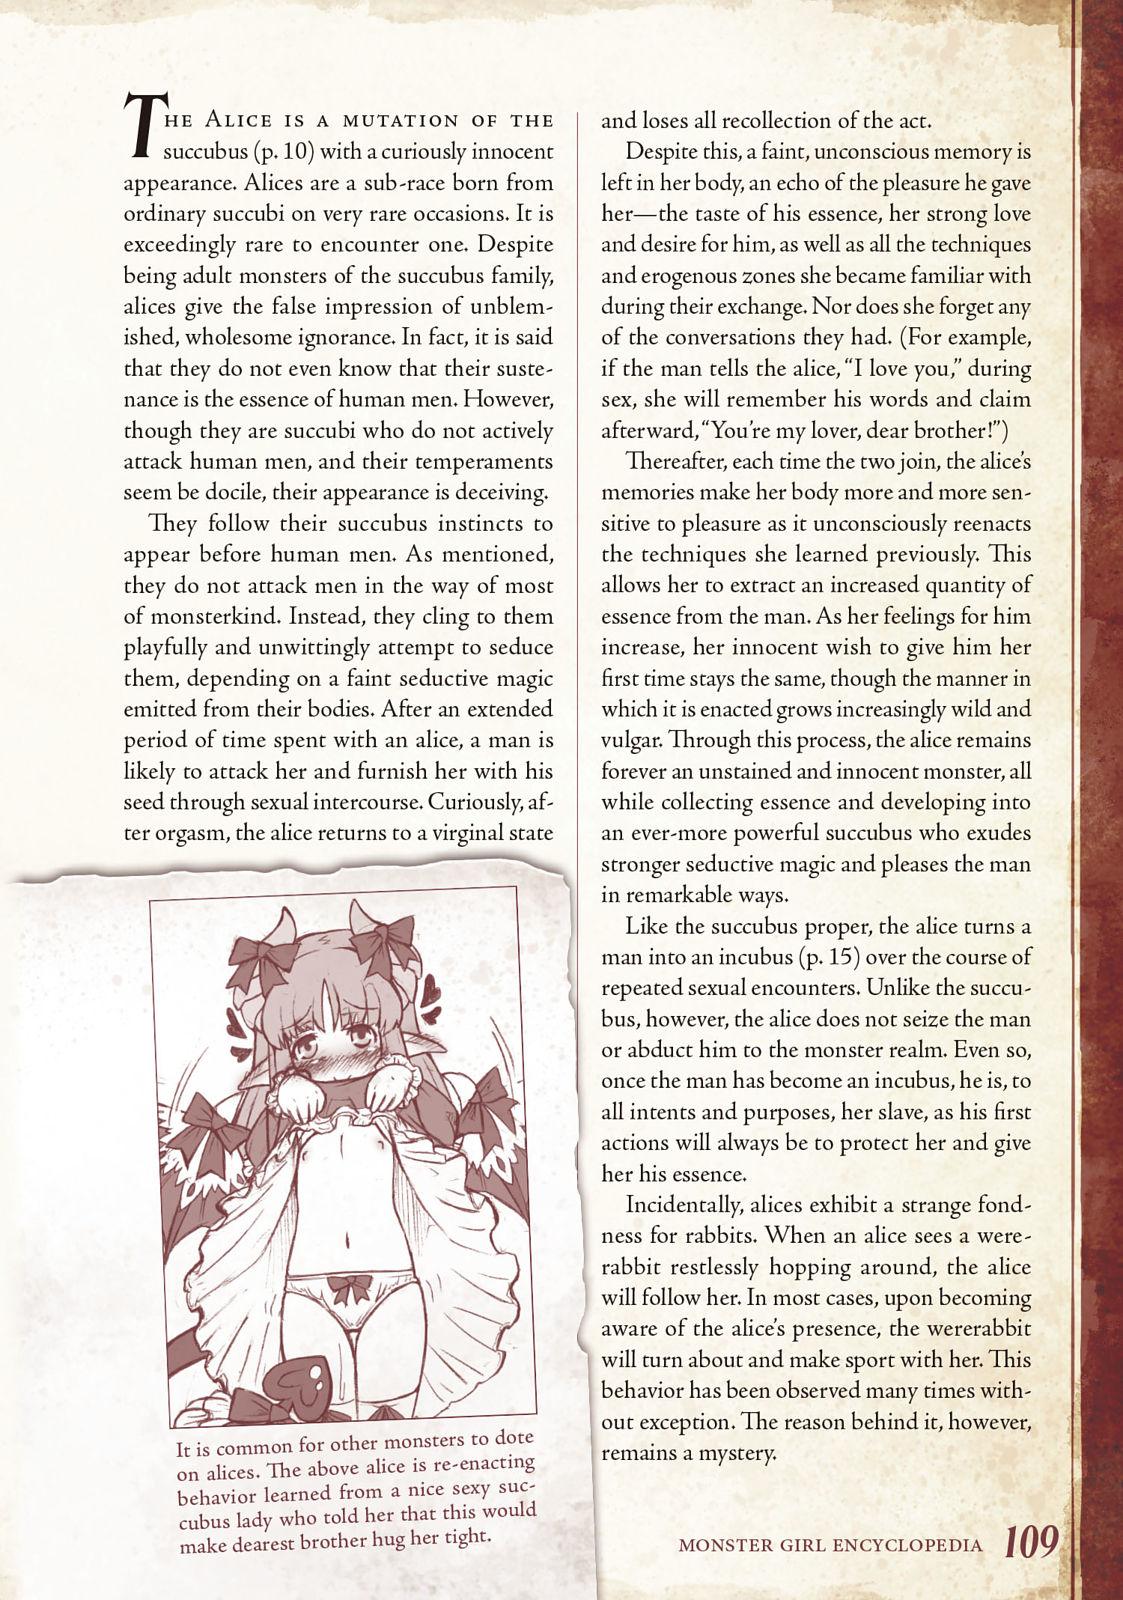 Monster Girl Encyclopedia Vol. 1 109